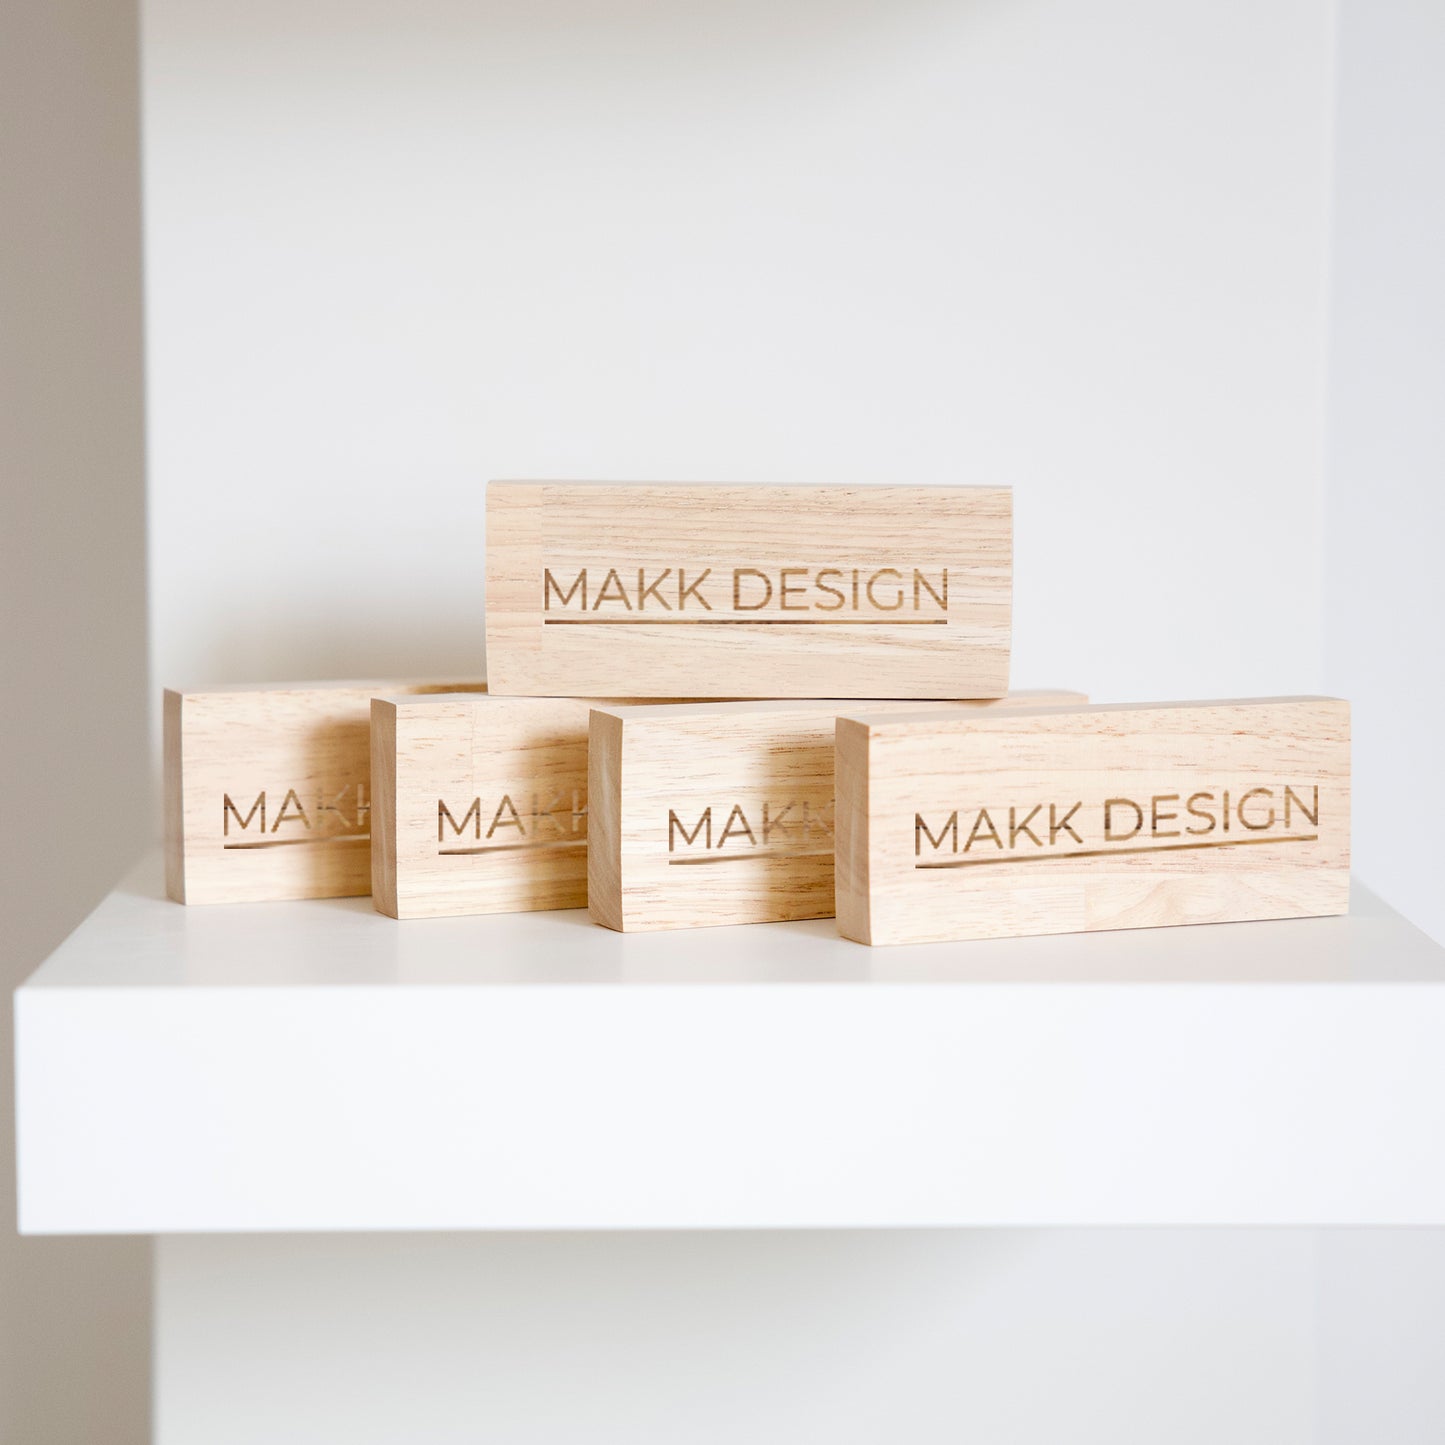 Personnalisation de blocs en bois pour marque et magasin par Makk Design